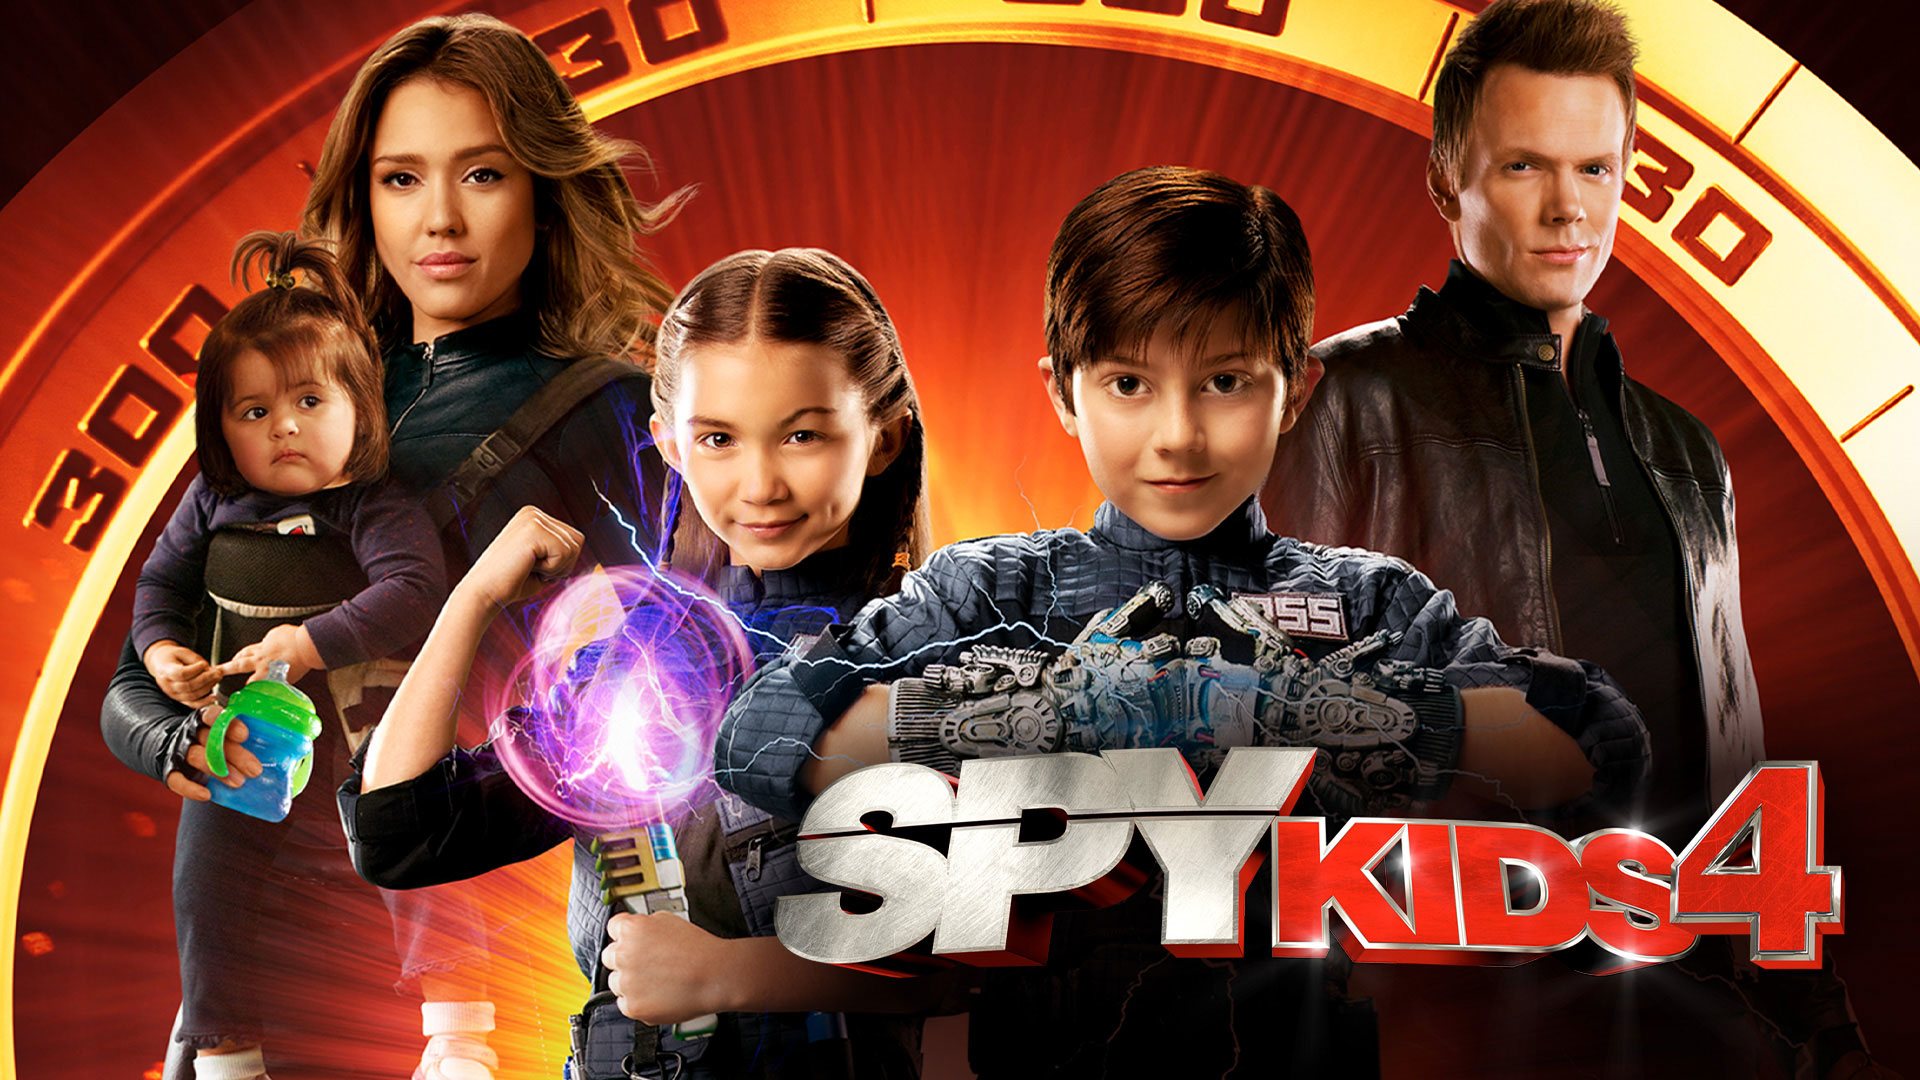 Spy Kids 4